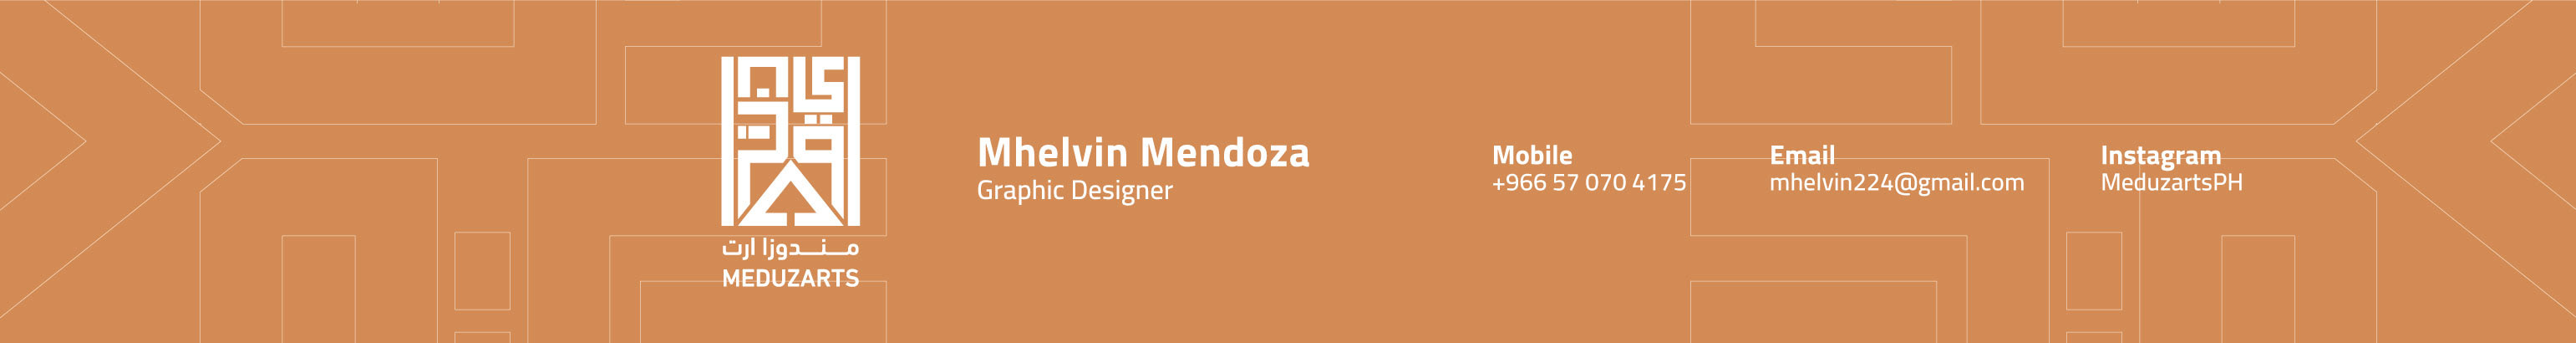 Banner de perfil de Mhelvin Mendoza